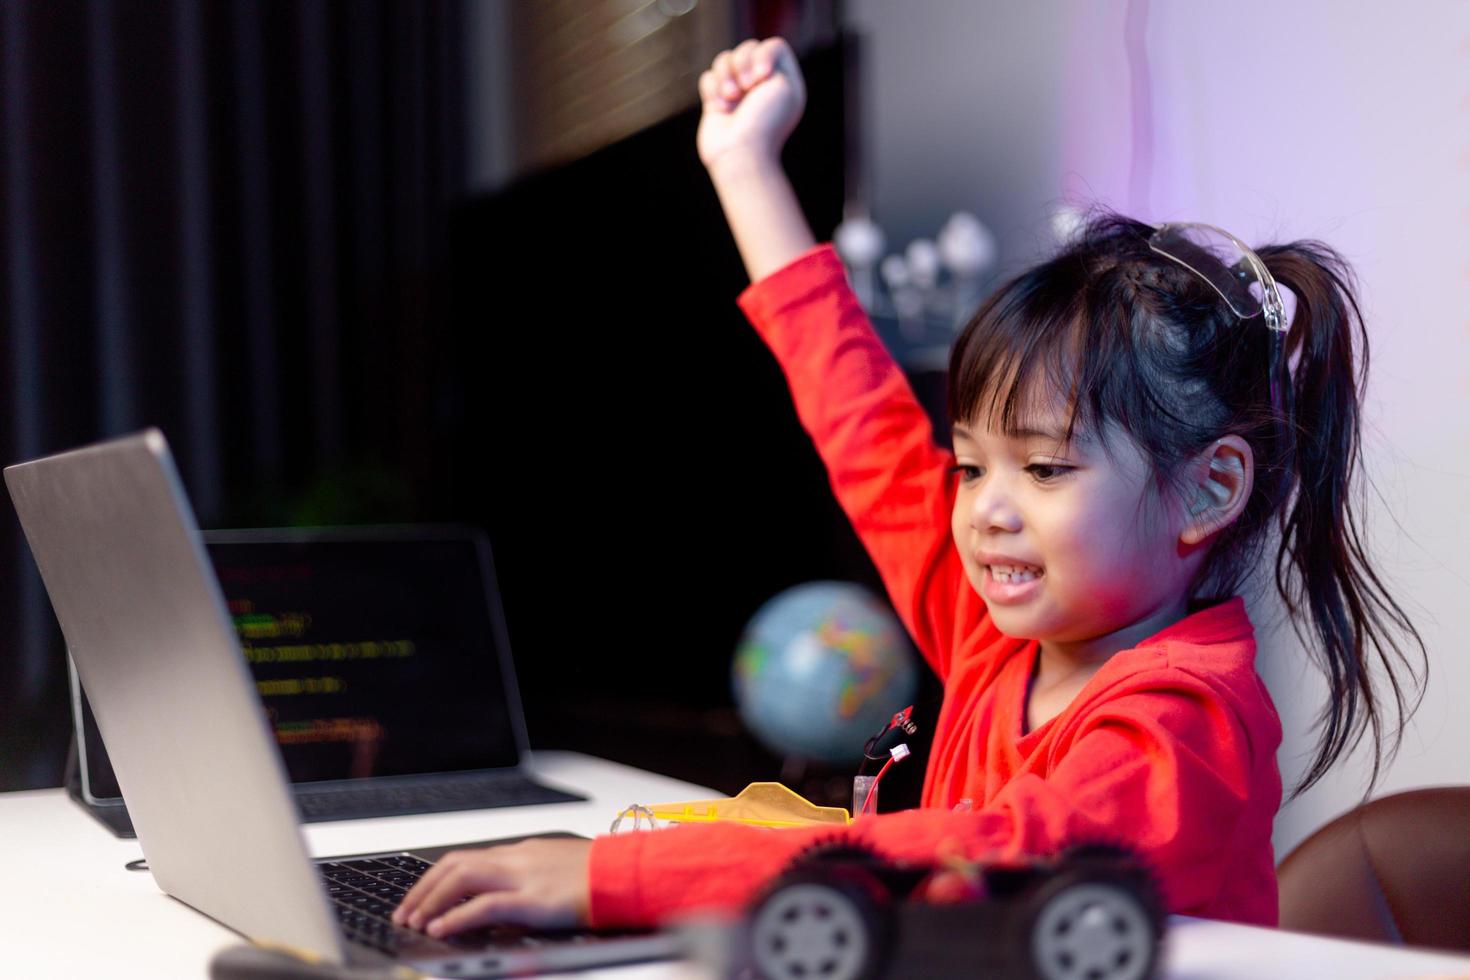 Asien-studenter lär sig hemma i kodning av robotbilar och kablar för elektronikkort i stam, steam, matematik ingenjör vetenskapsteknik datorkod i robotik för barn-koncept. foto